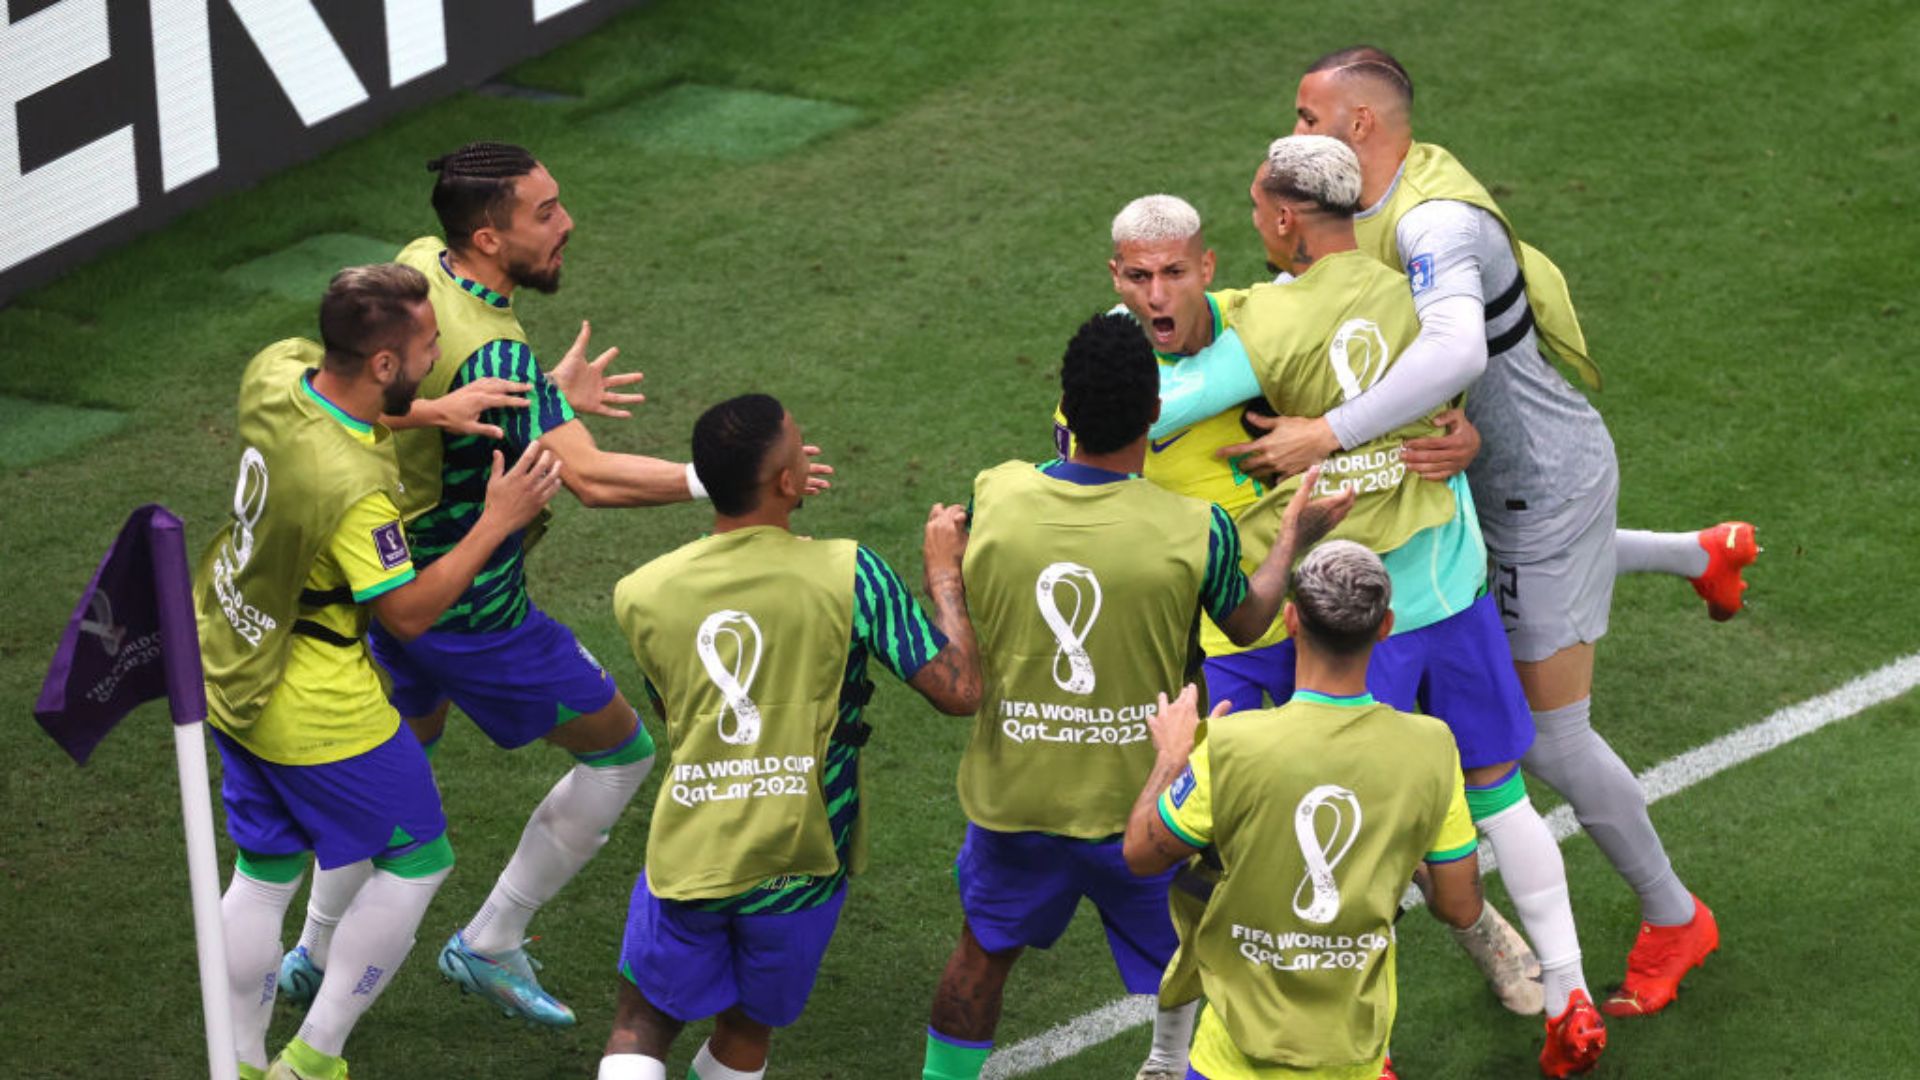 Brasil x Sérvia: confira os melhores memes do jogo da Copa do